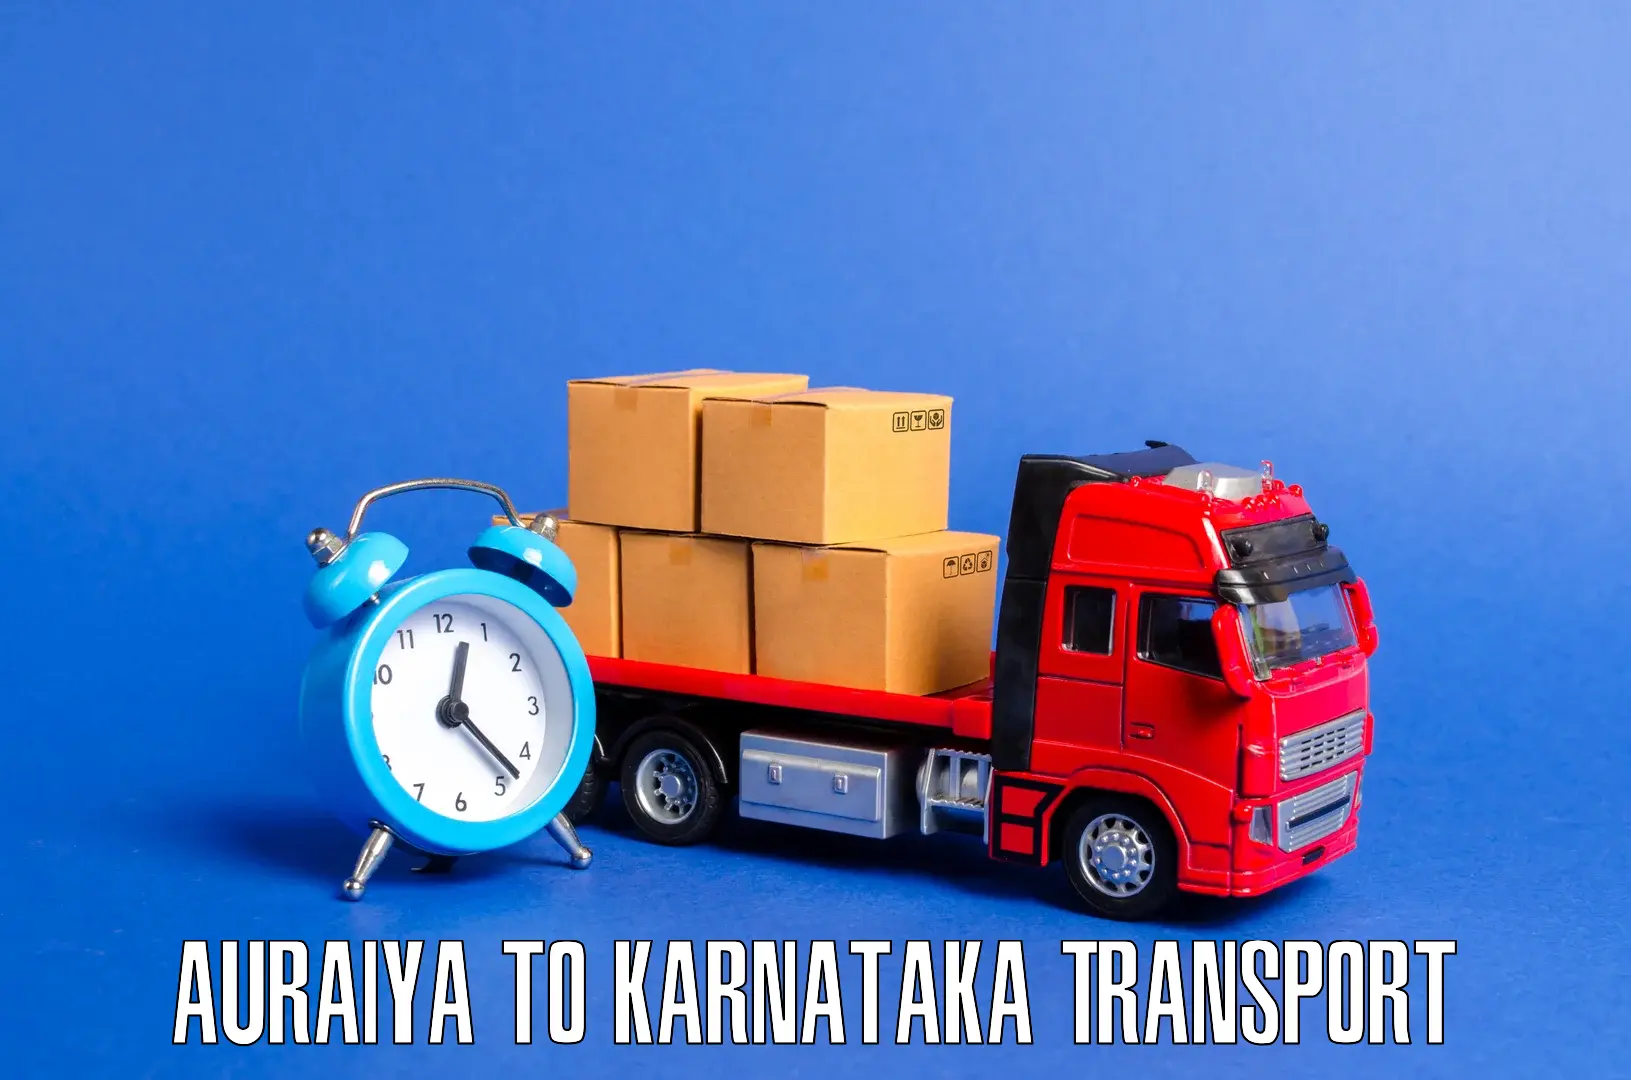 Interstate goods transport Auraiya to Davangere